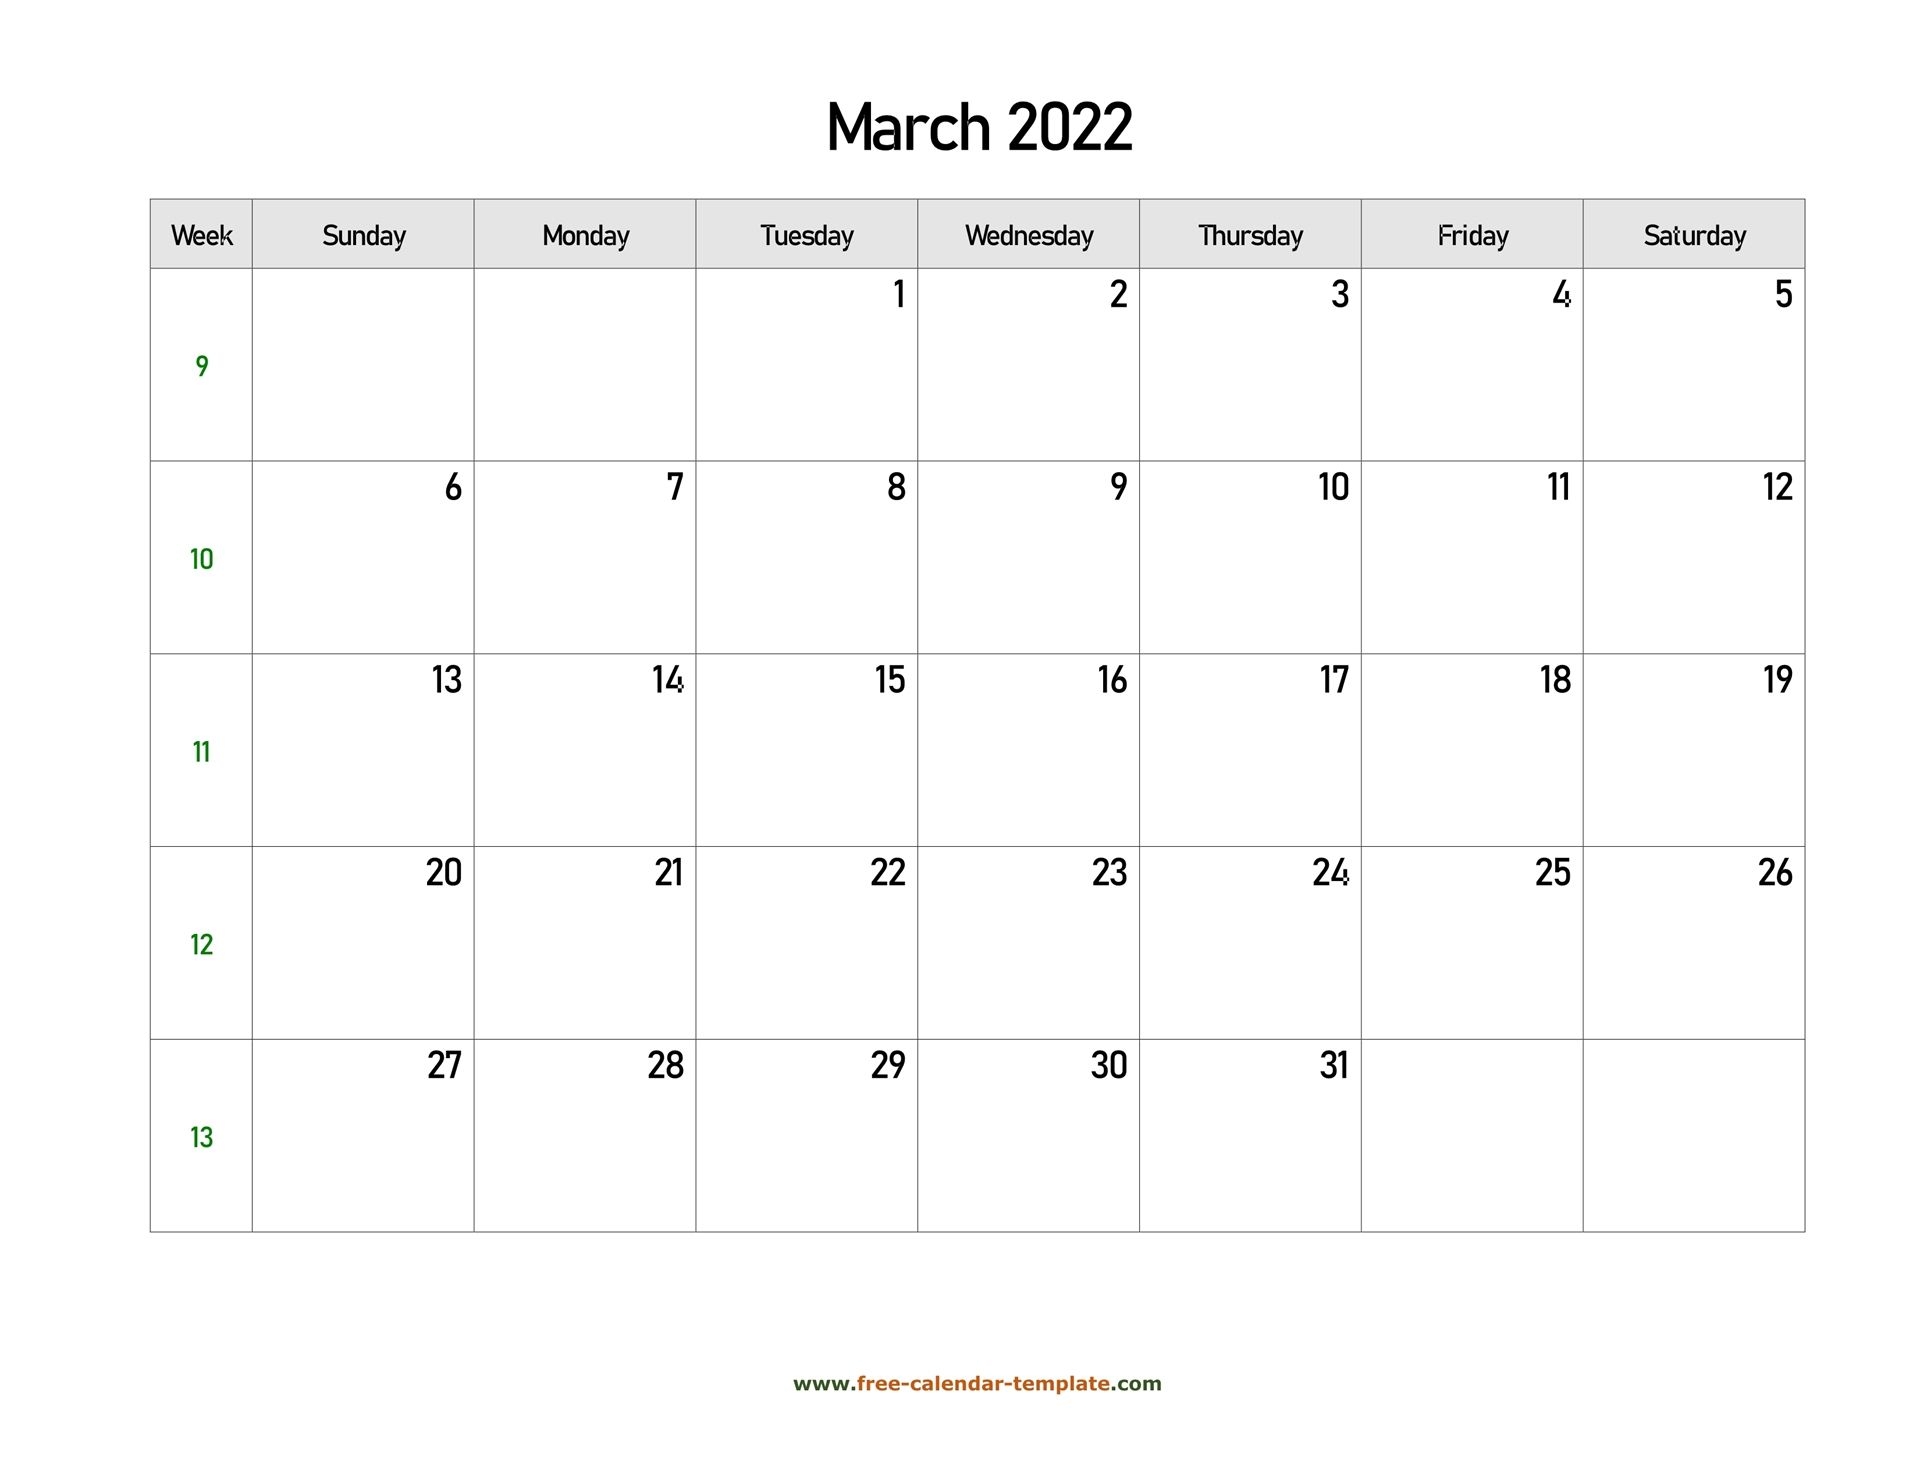 March 2022 Free Calendar Tempplate | Free-Calendar